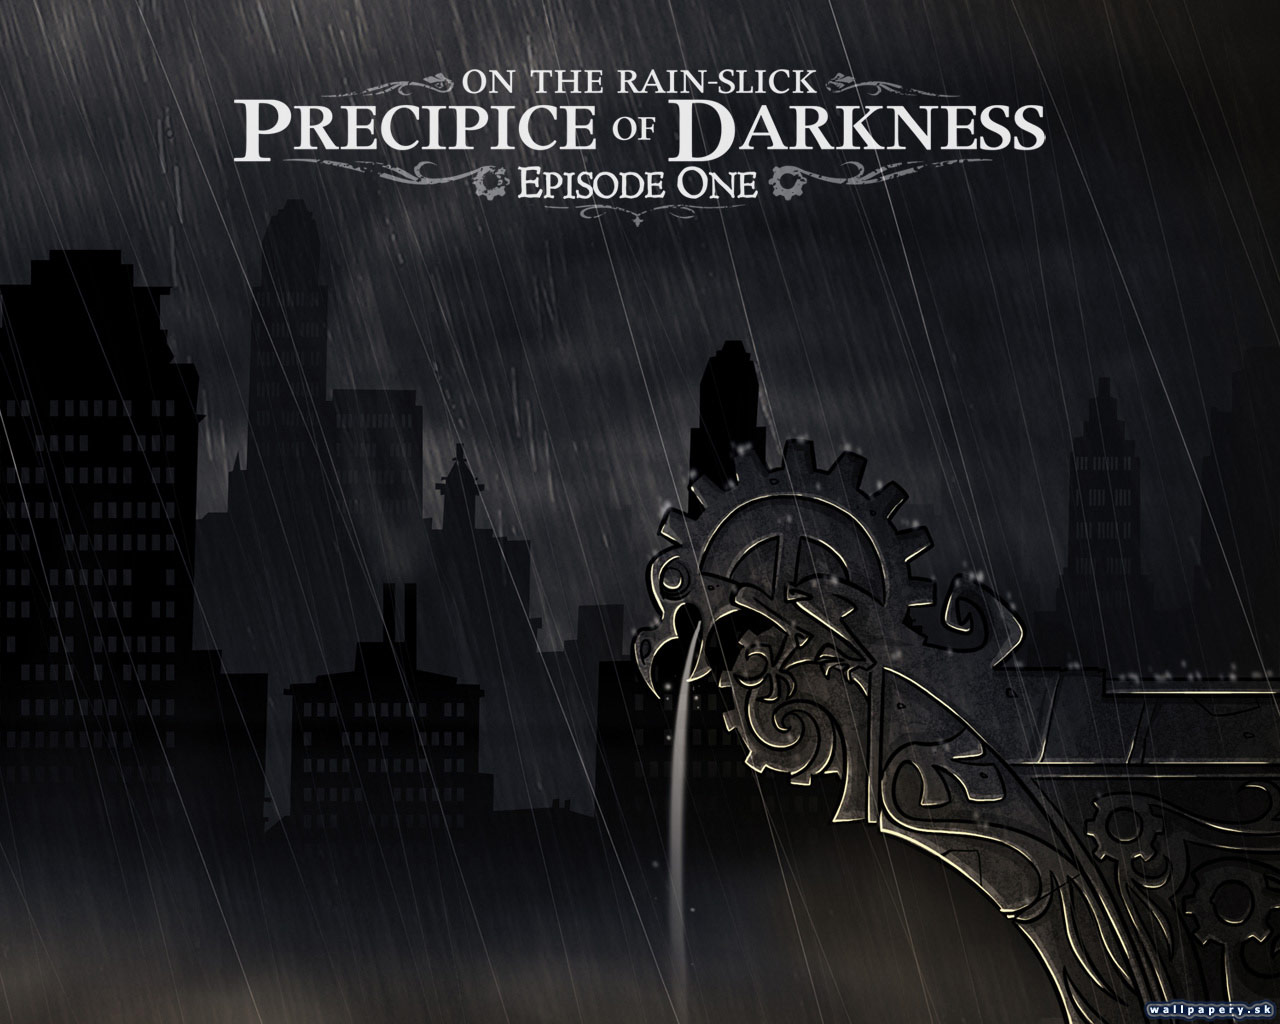 On The Rain-Slick: Precipice of Darkness - Episode One - wallpaper 4